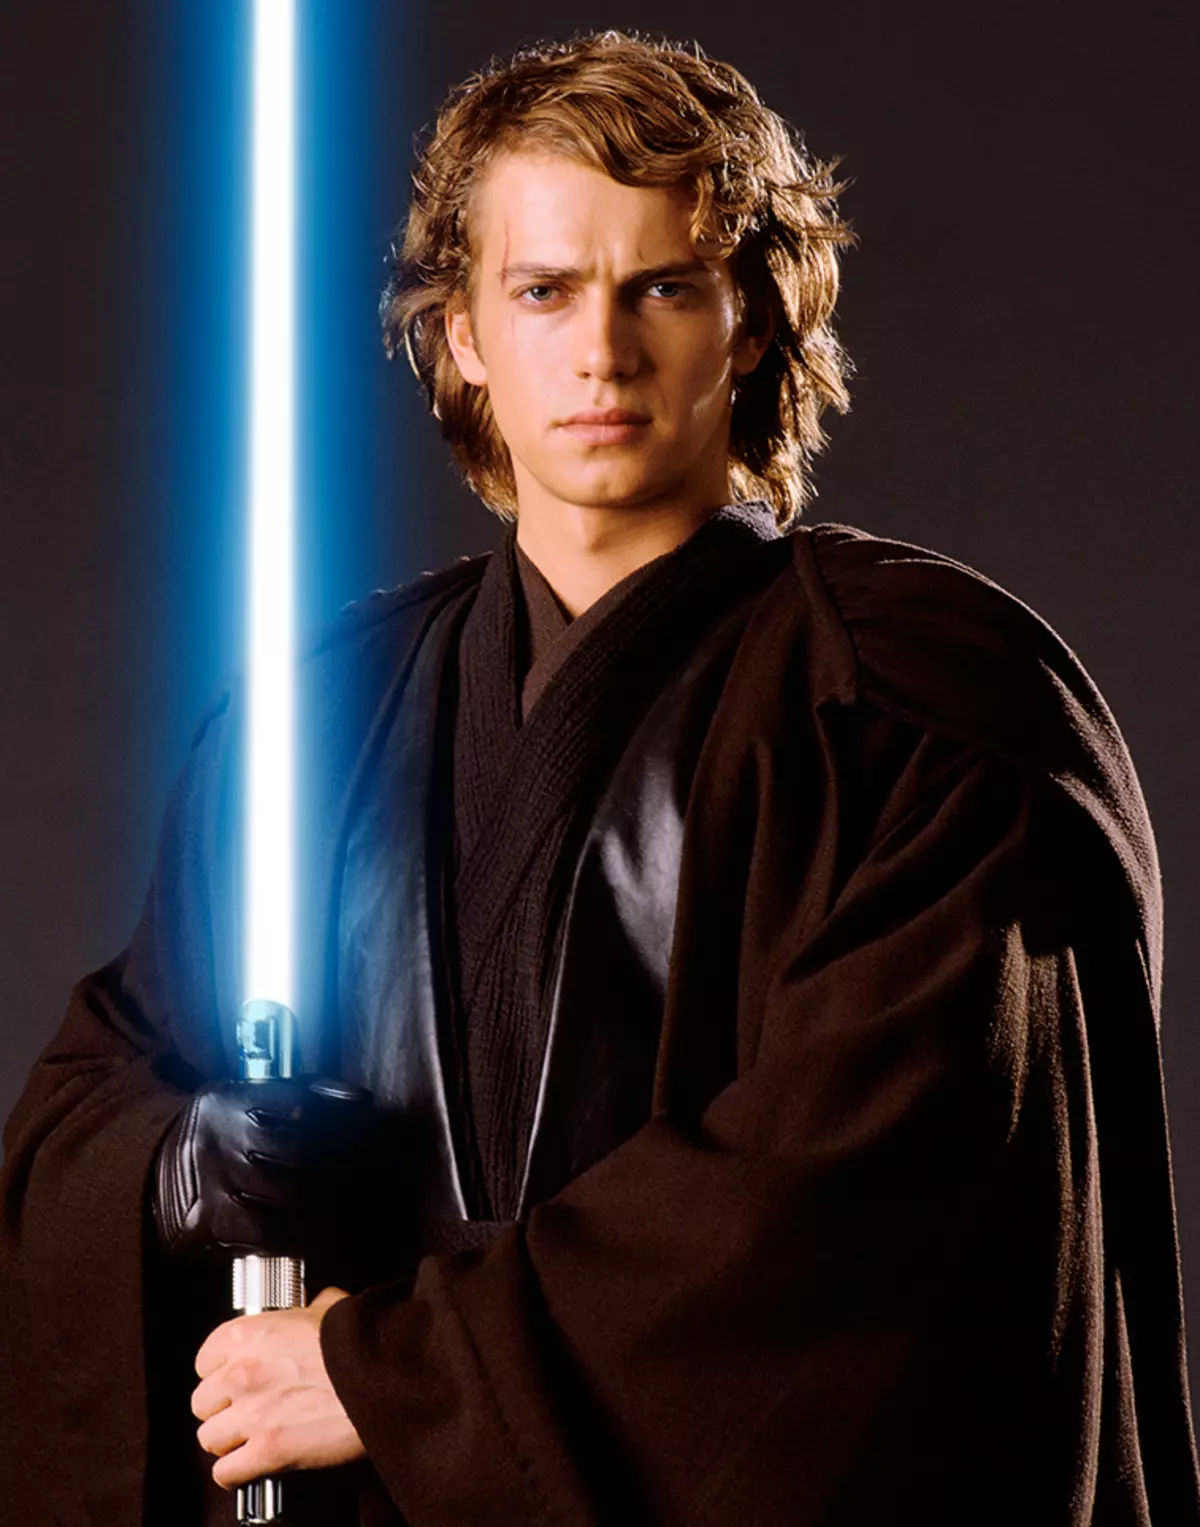 Izvođač Darth Vader Hayden Christensen može igrati u seriji o Obi-Vana Kenobiju 93376_1